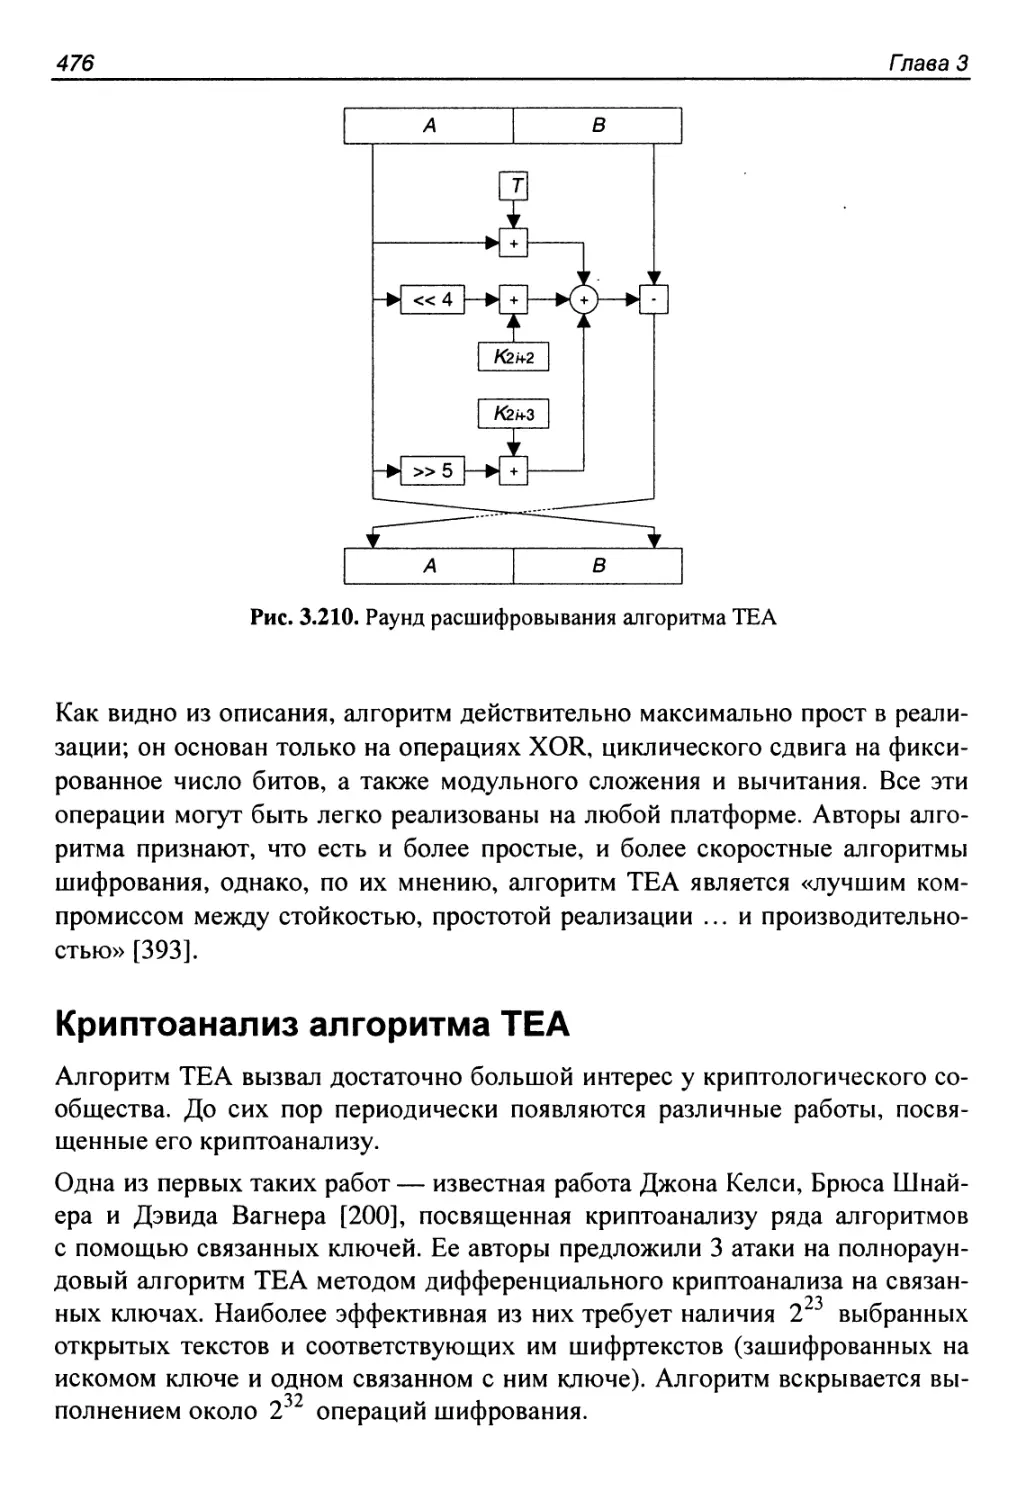 Криптоанализ алгоритма TEA